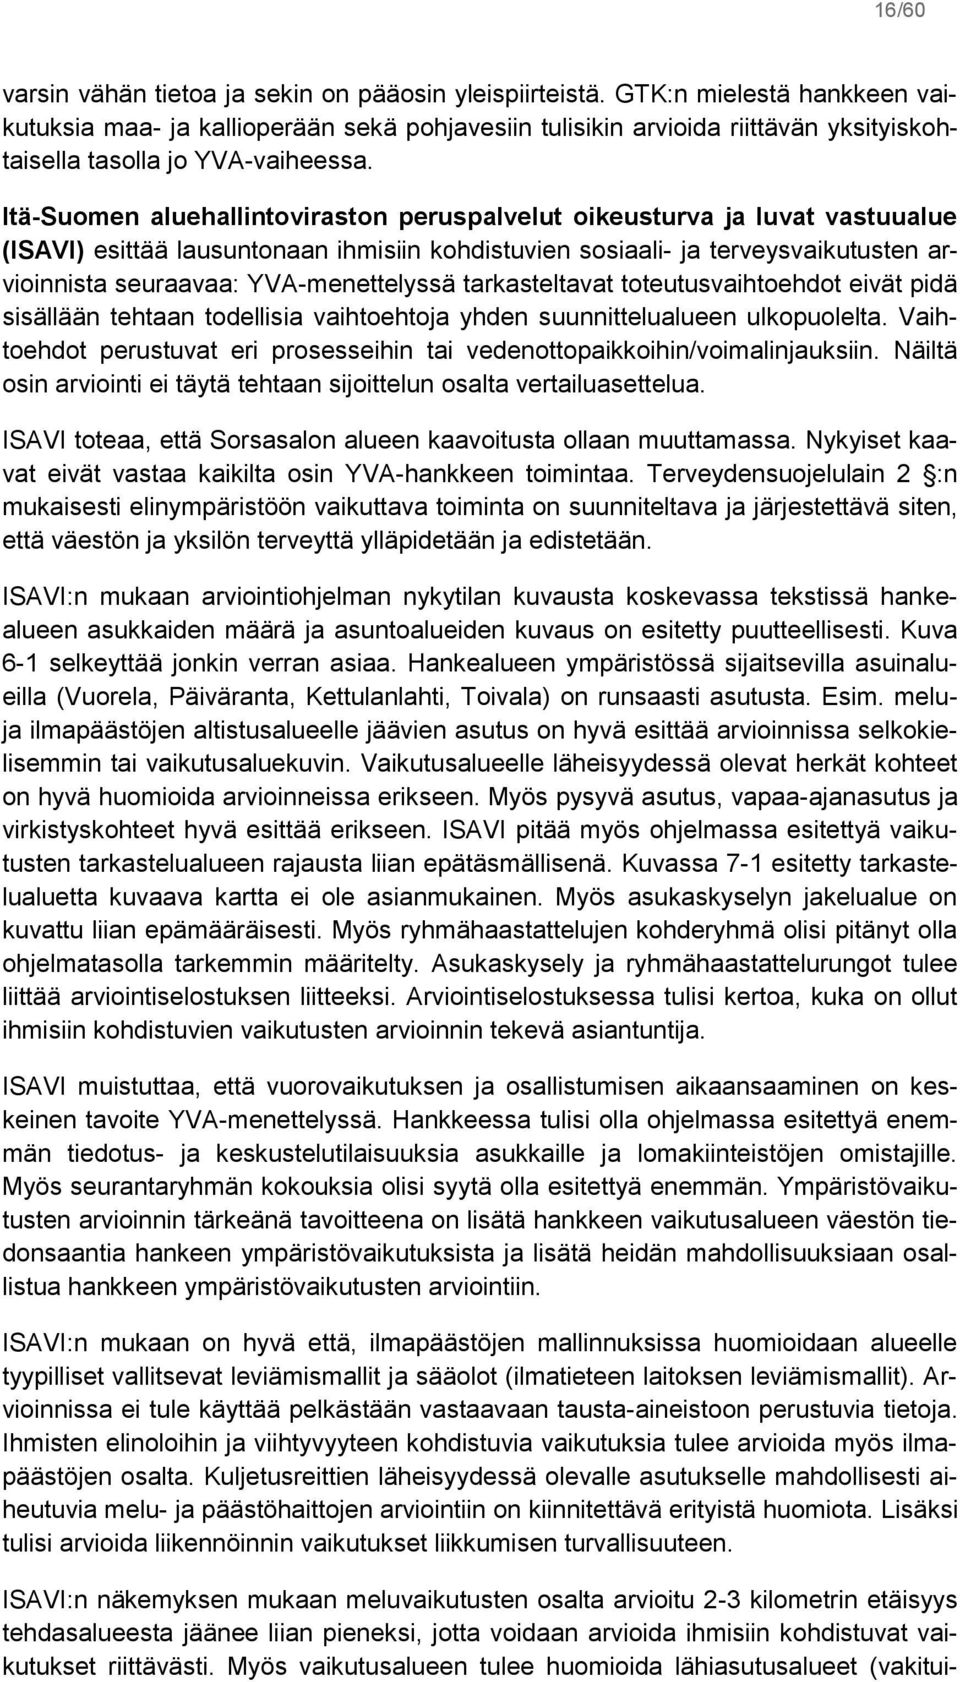 Itä-Suomen aluehallintoviraston peruspalvelut oikeusturva ja luvat vastuualue (ISAVI) esittää lausuntonaan ihmisiin kohdistuvien sosiaali- ja terveysvaikutusten arvioinnista seuraavaa: